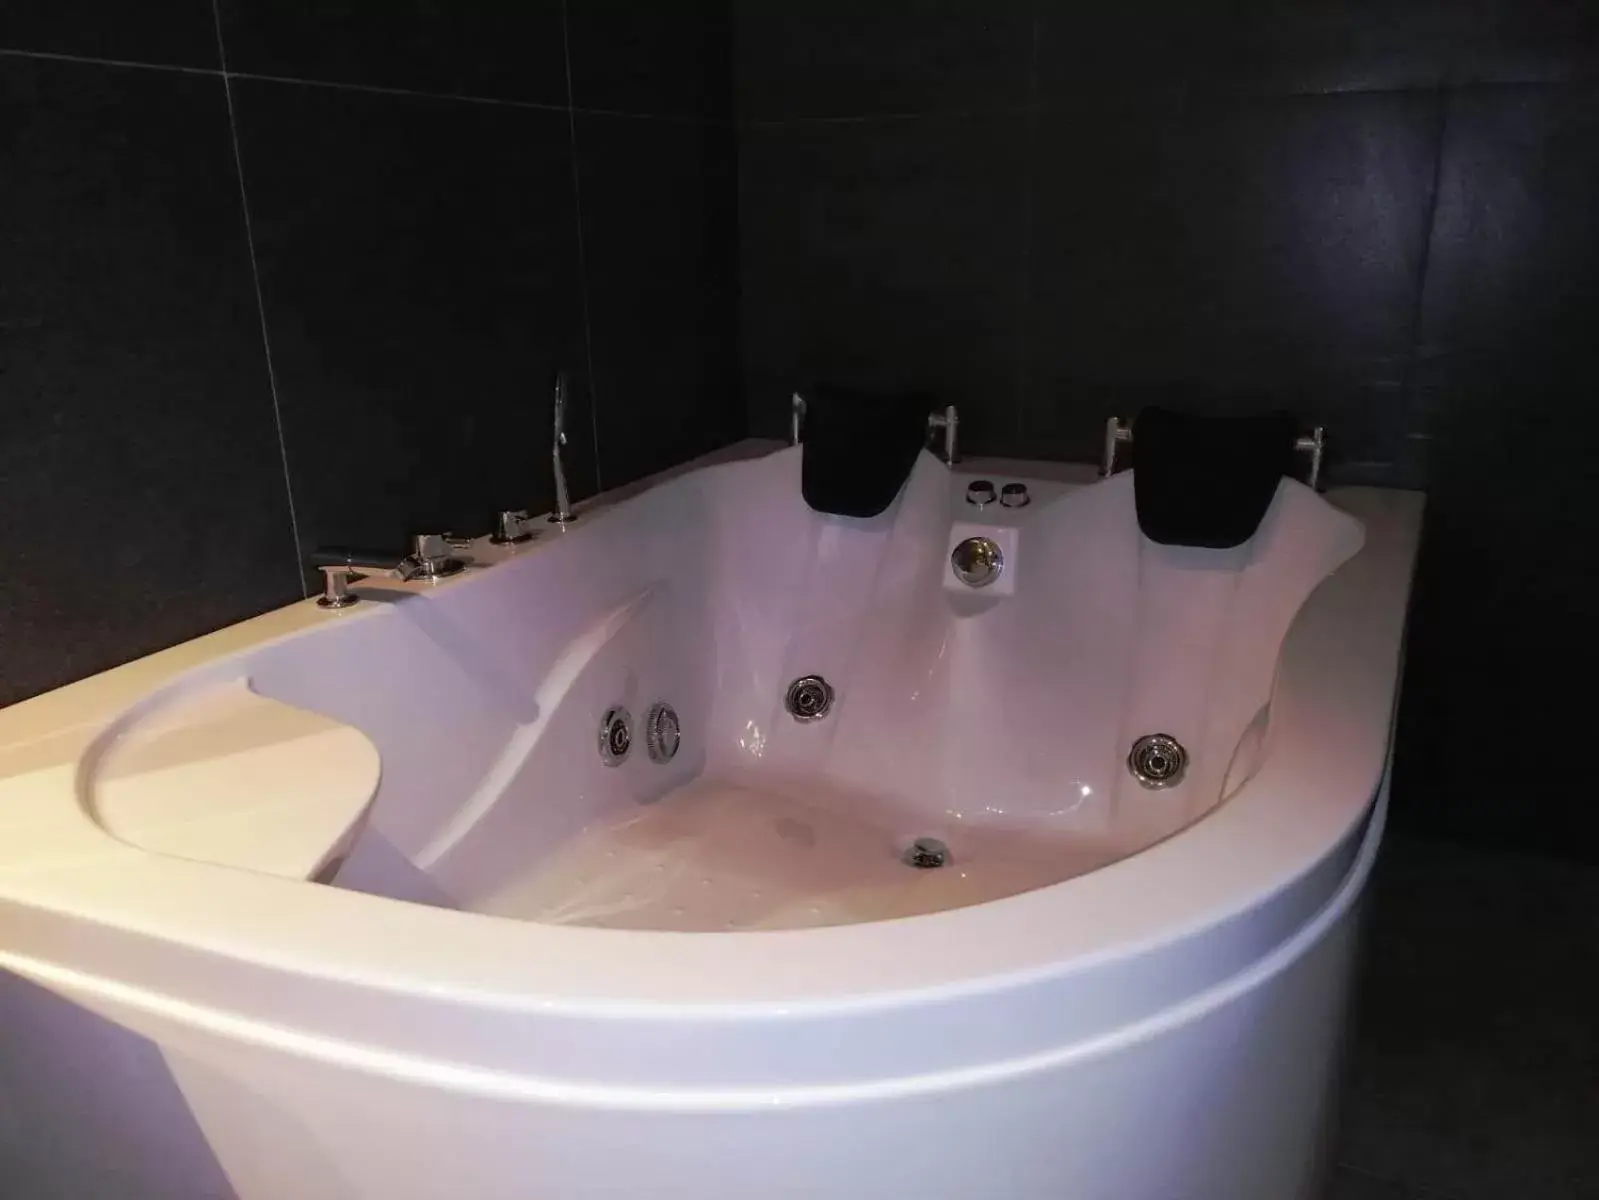 Bathroom in Ramee Palace Hotel